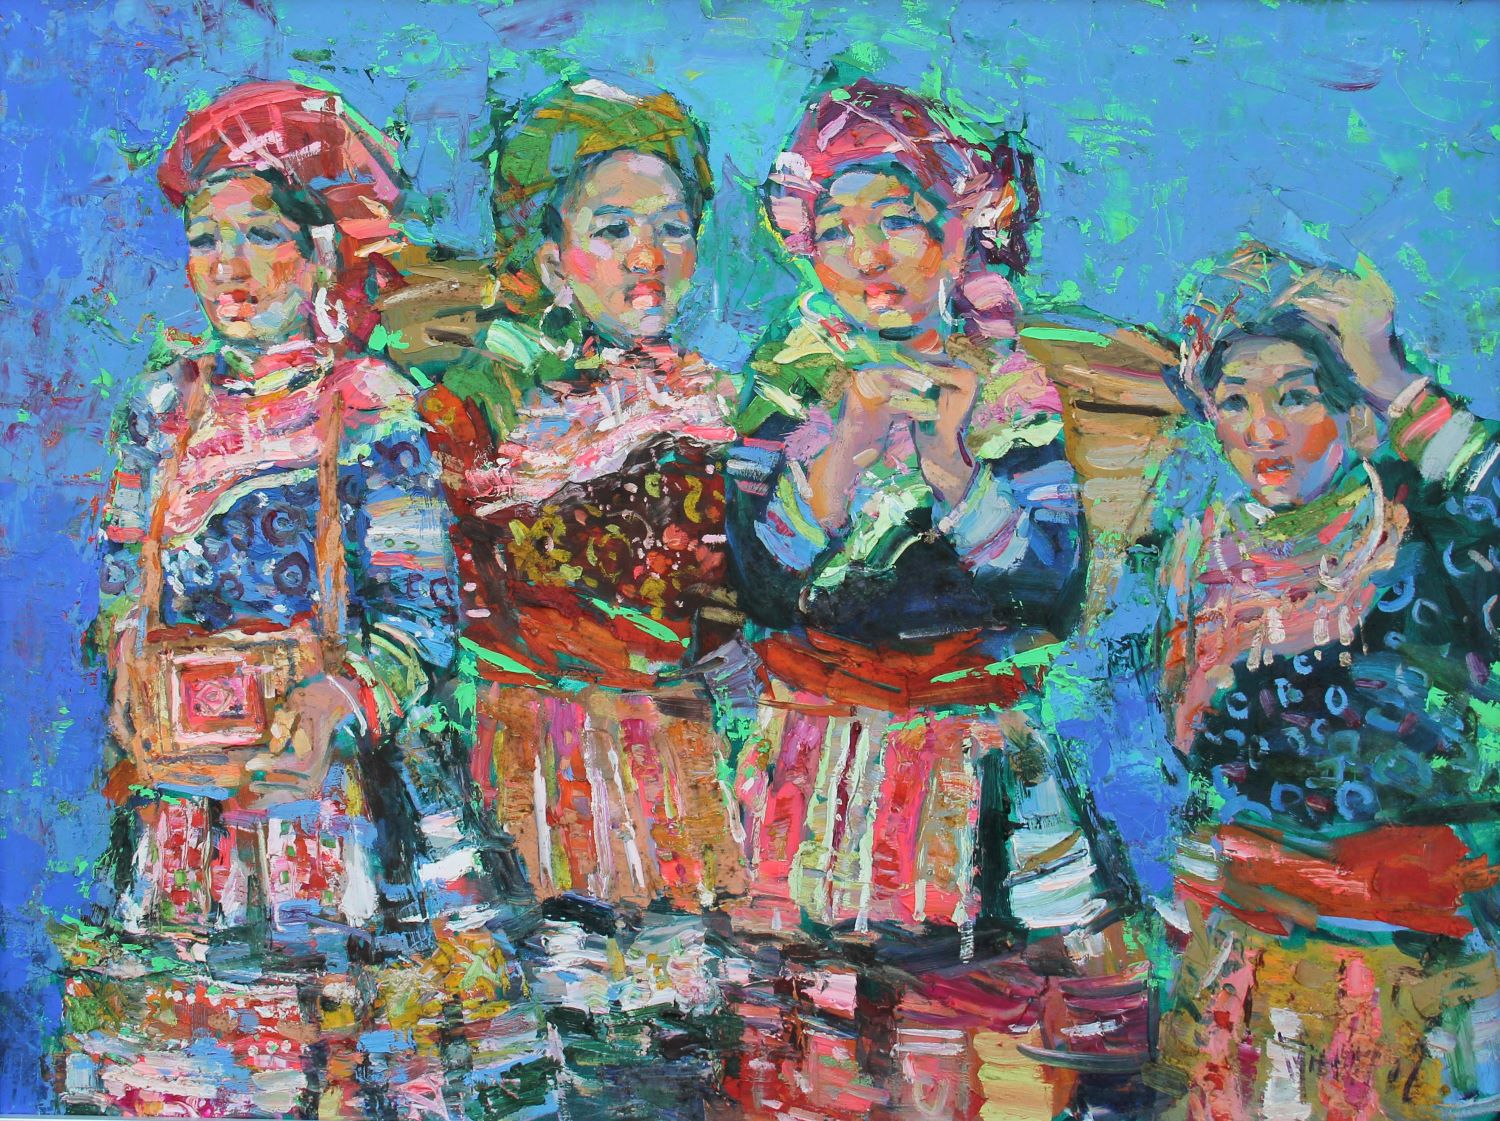 Tranh sơn dầu Những cô gái người H'mong - HS Phạm Hoàng Minh